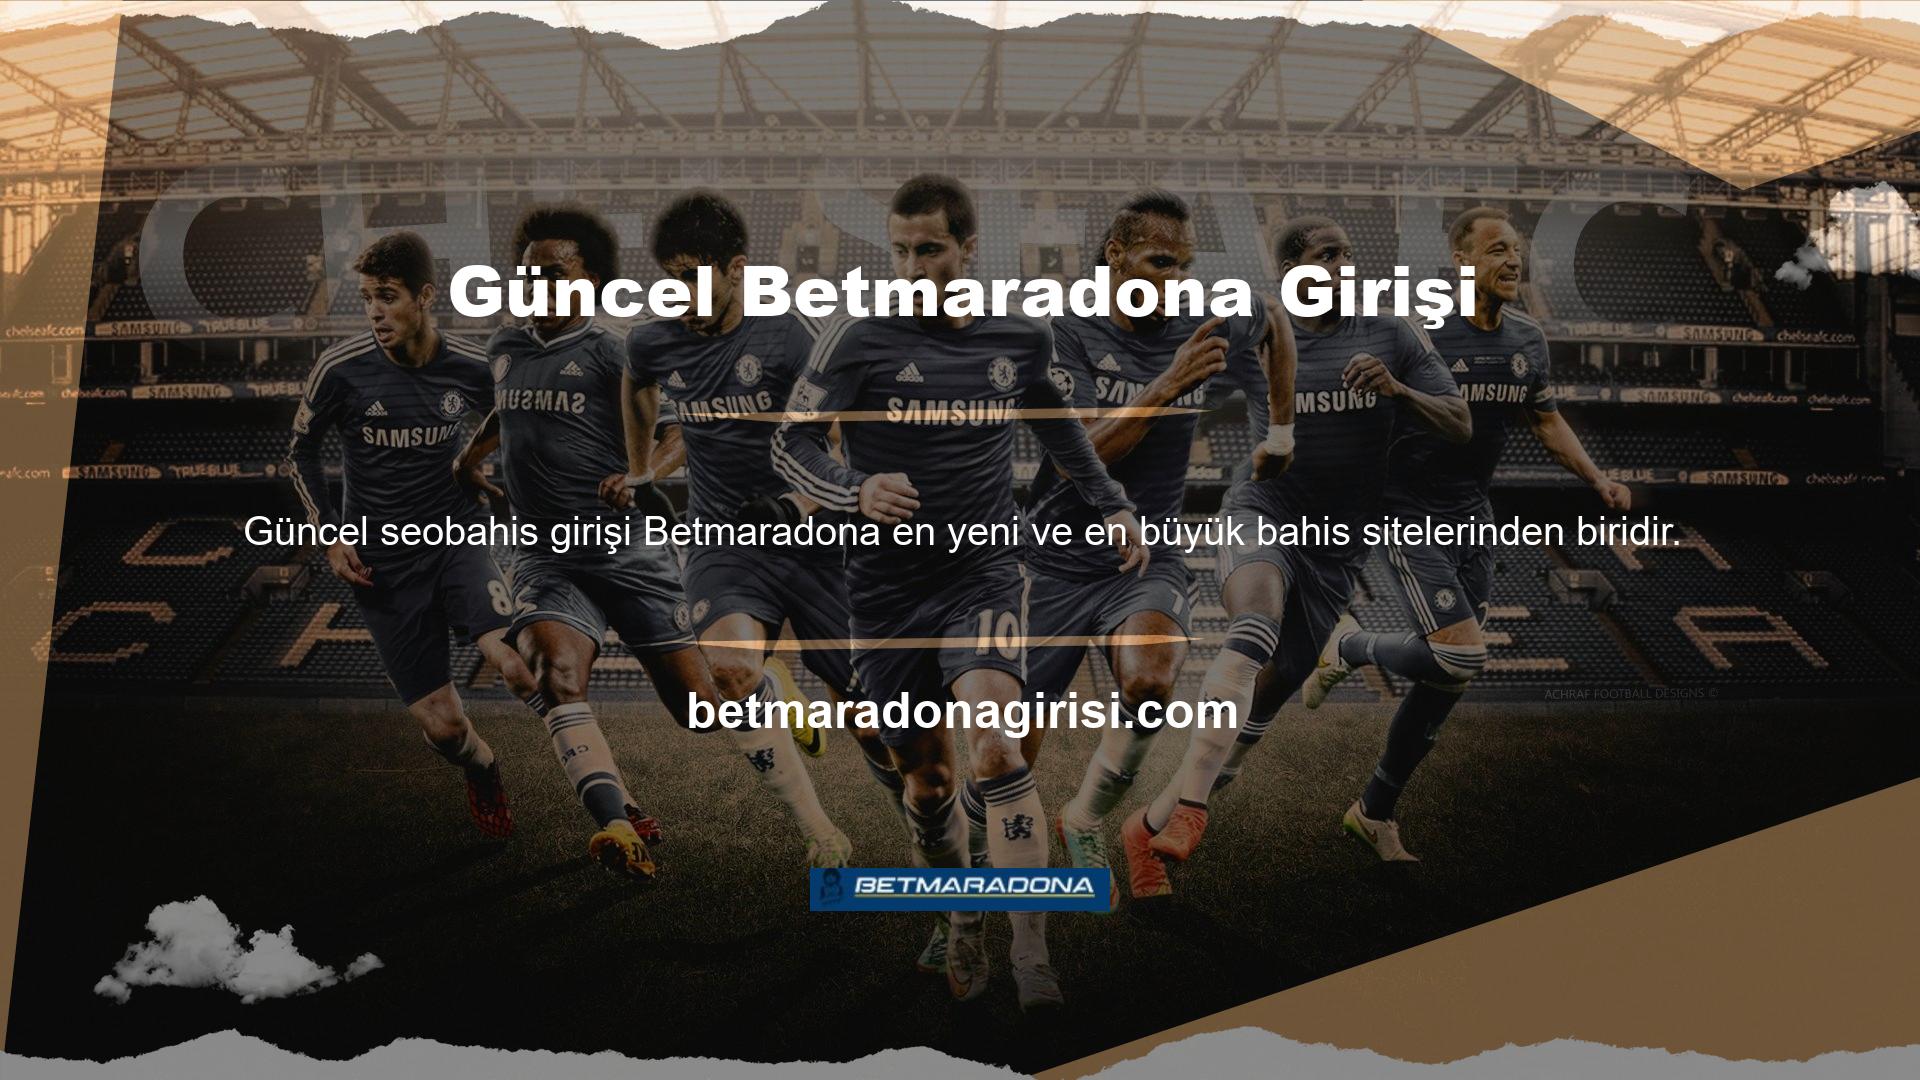 Betmaradona, web sitesi ile dijital dünyanın her alanında her şeyi bir adım öteye taşıyor ve sadece oyun bahisleri değil aynı zamanda en yeni kayıt ve üyelik seçeneklerini de sunuyor